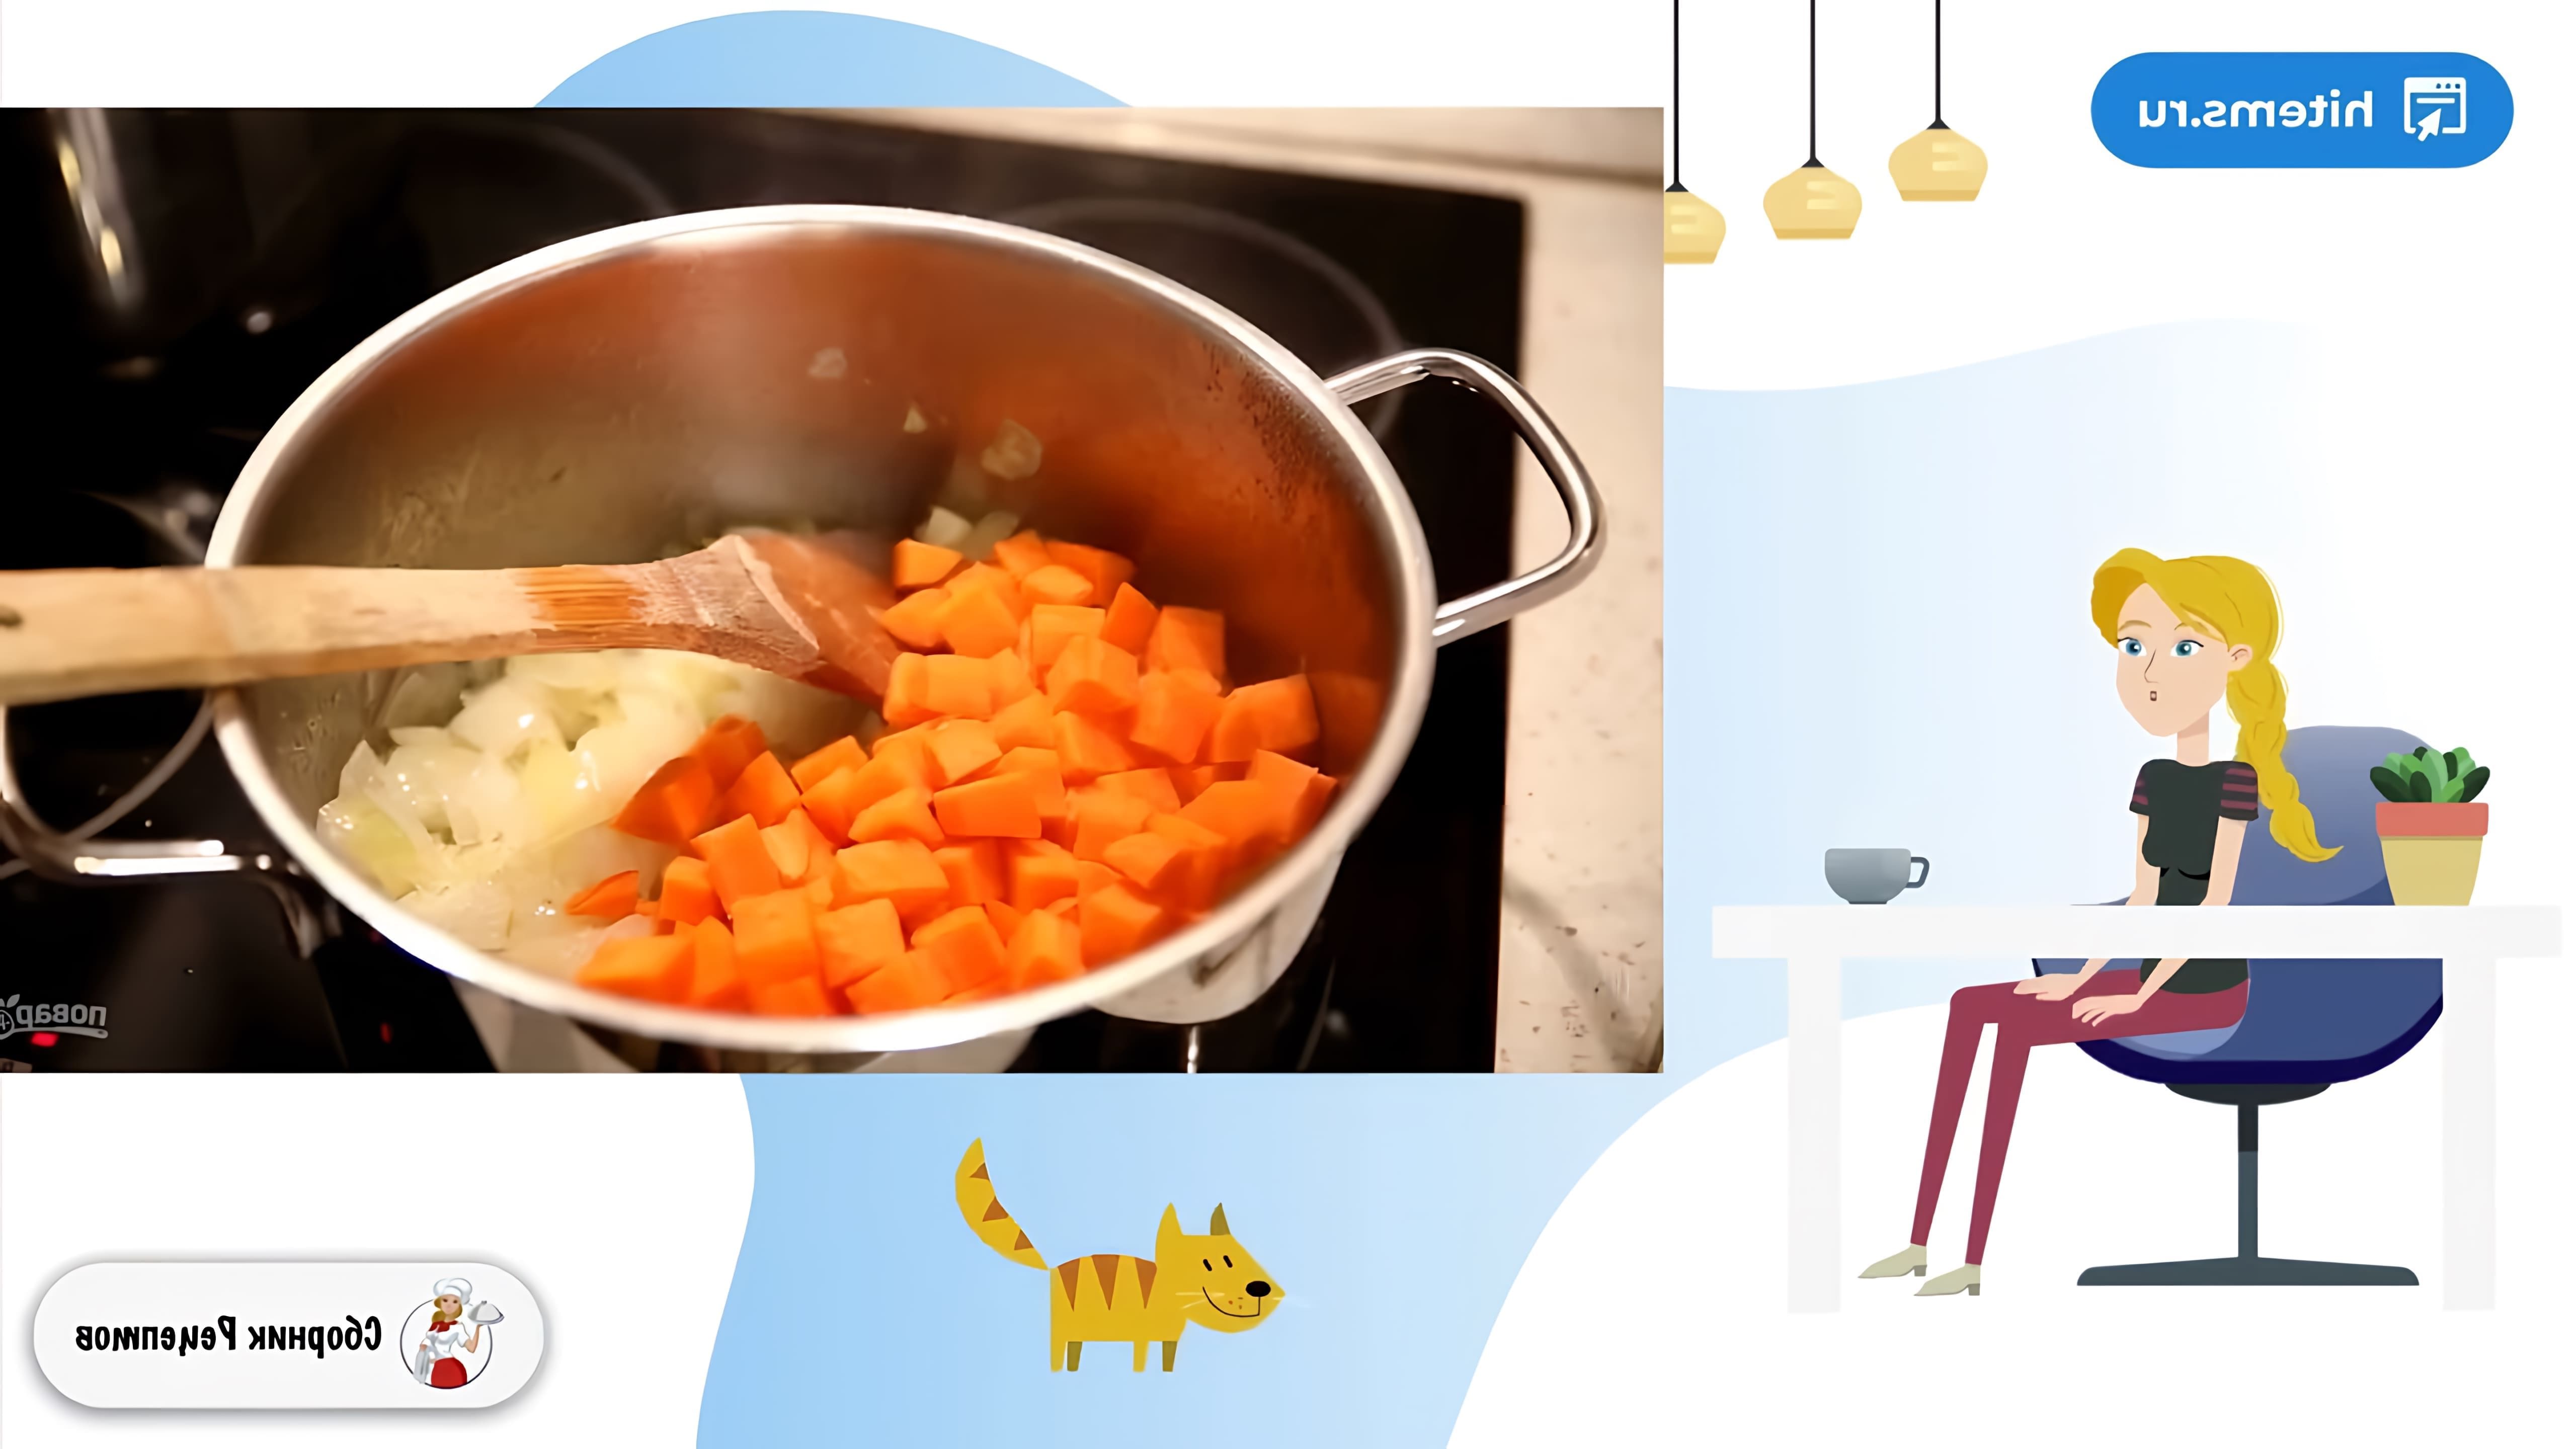 В этом видео демонстрируется рецепт приготовления тыквенного крем-супа со сливками и сыром